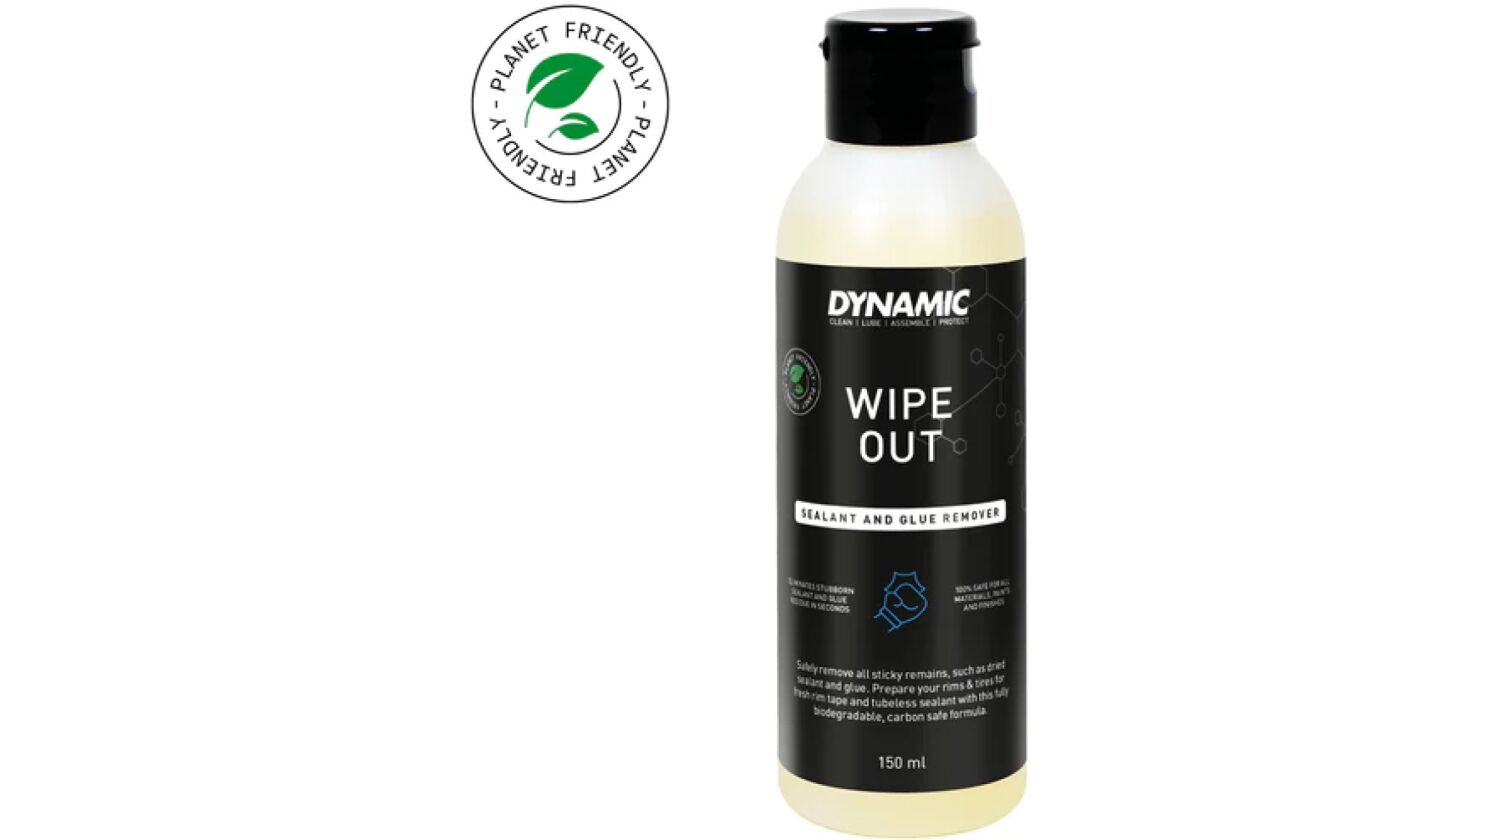 Dynamic Wipe Out Dichtmilch- und Klebstoffentferner 150 ml